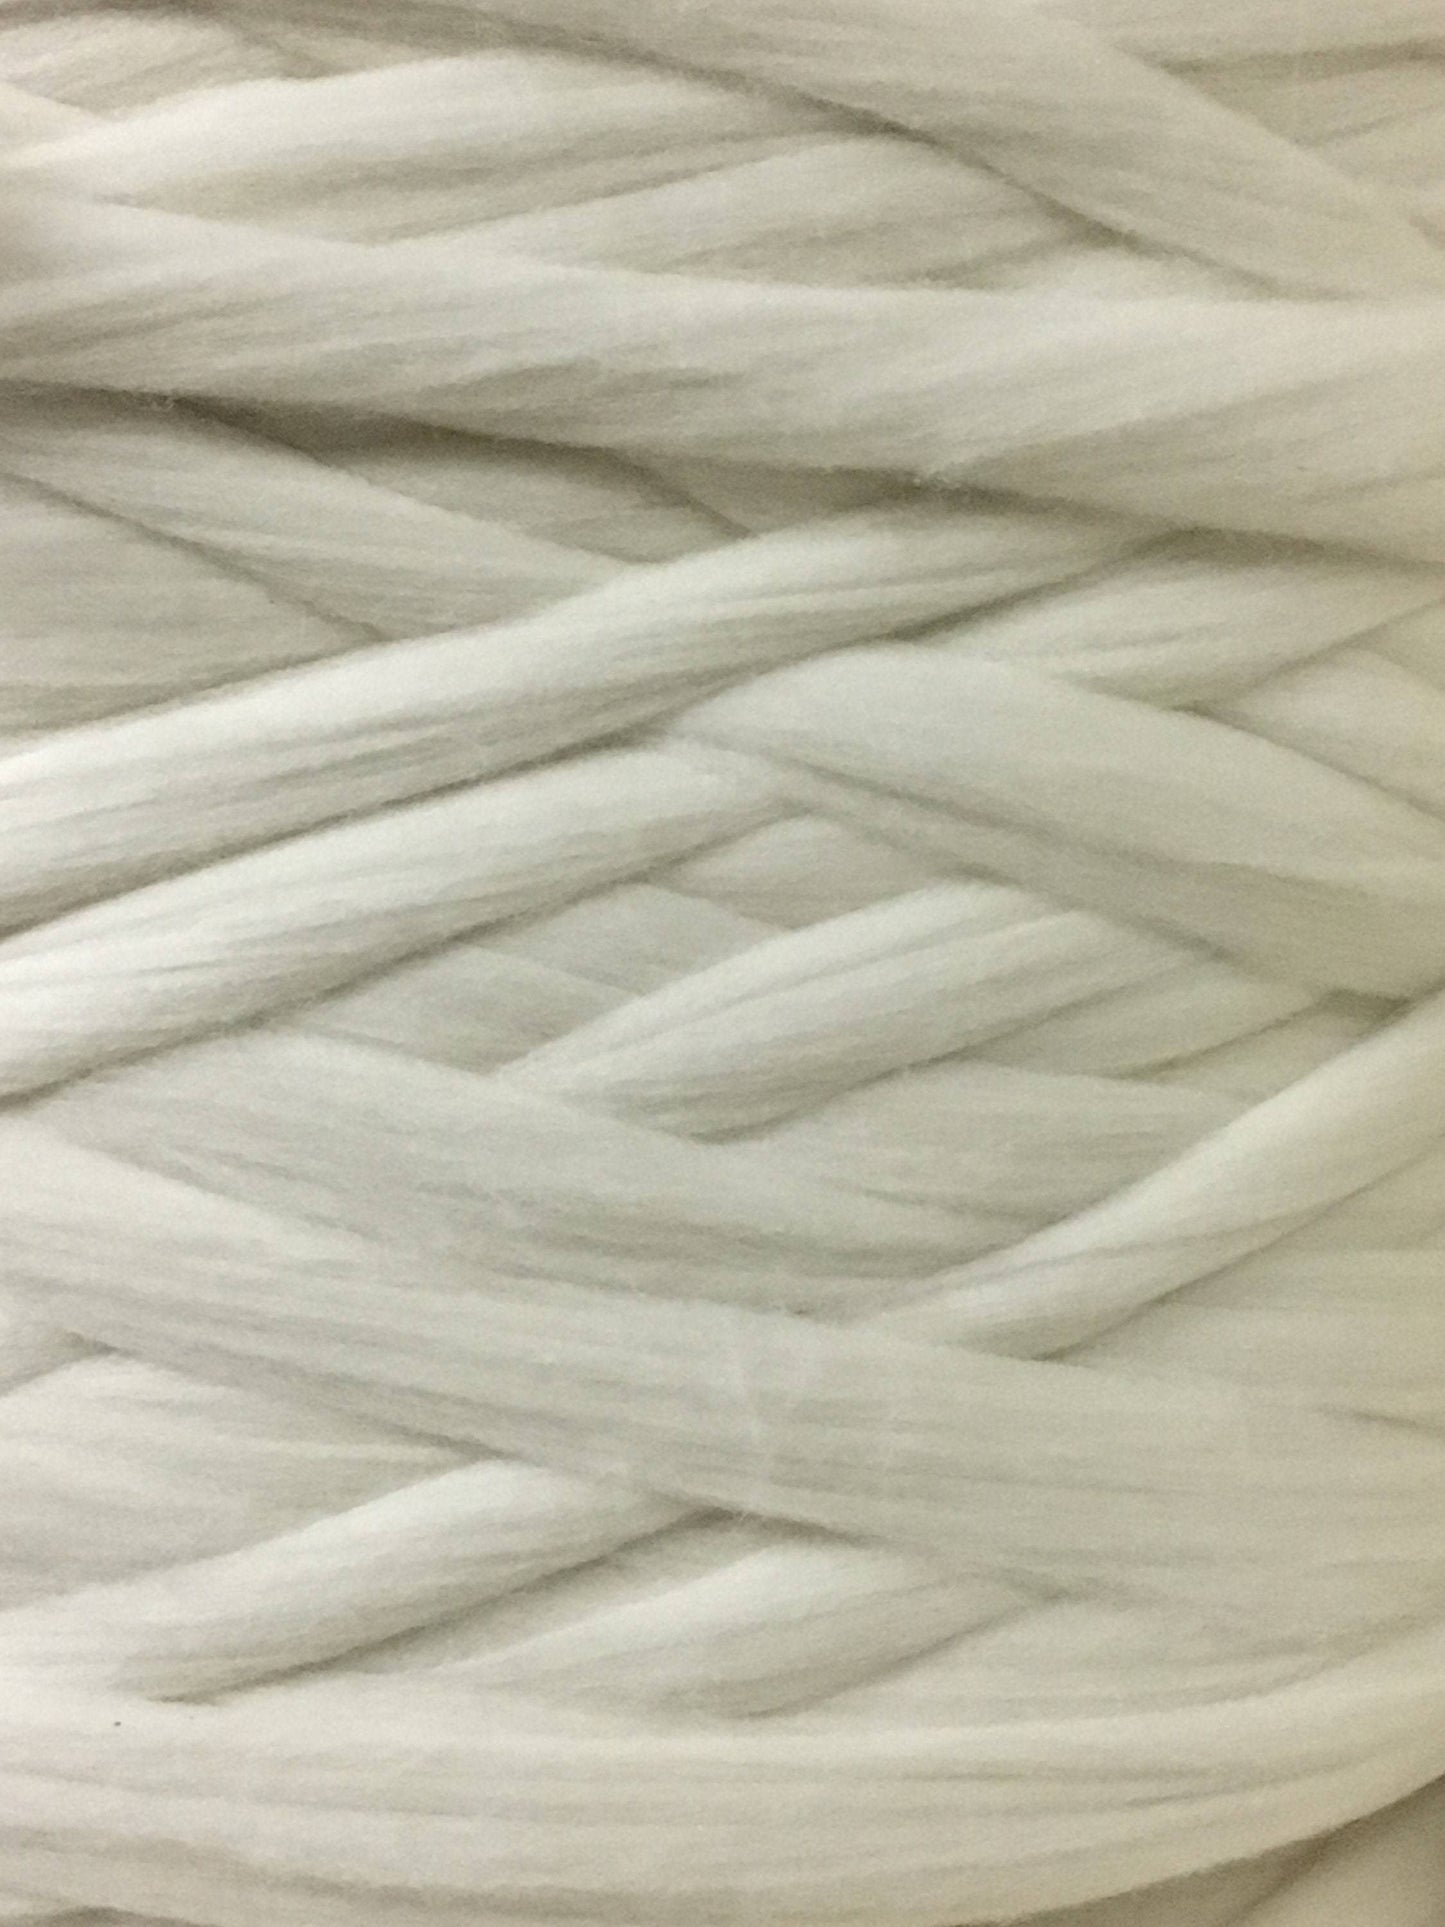 Luxe Merino Wool Roving Fiber